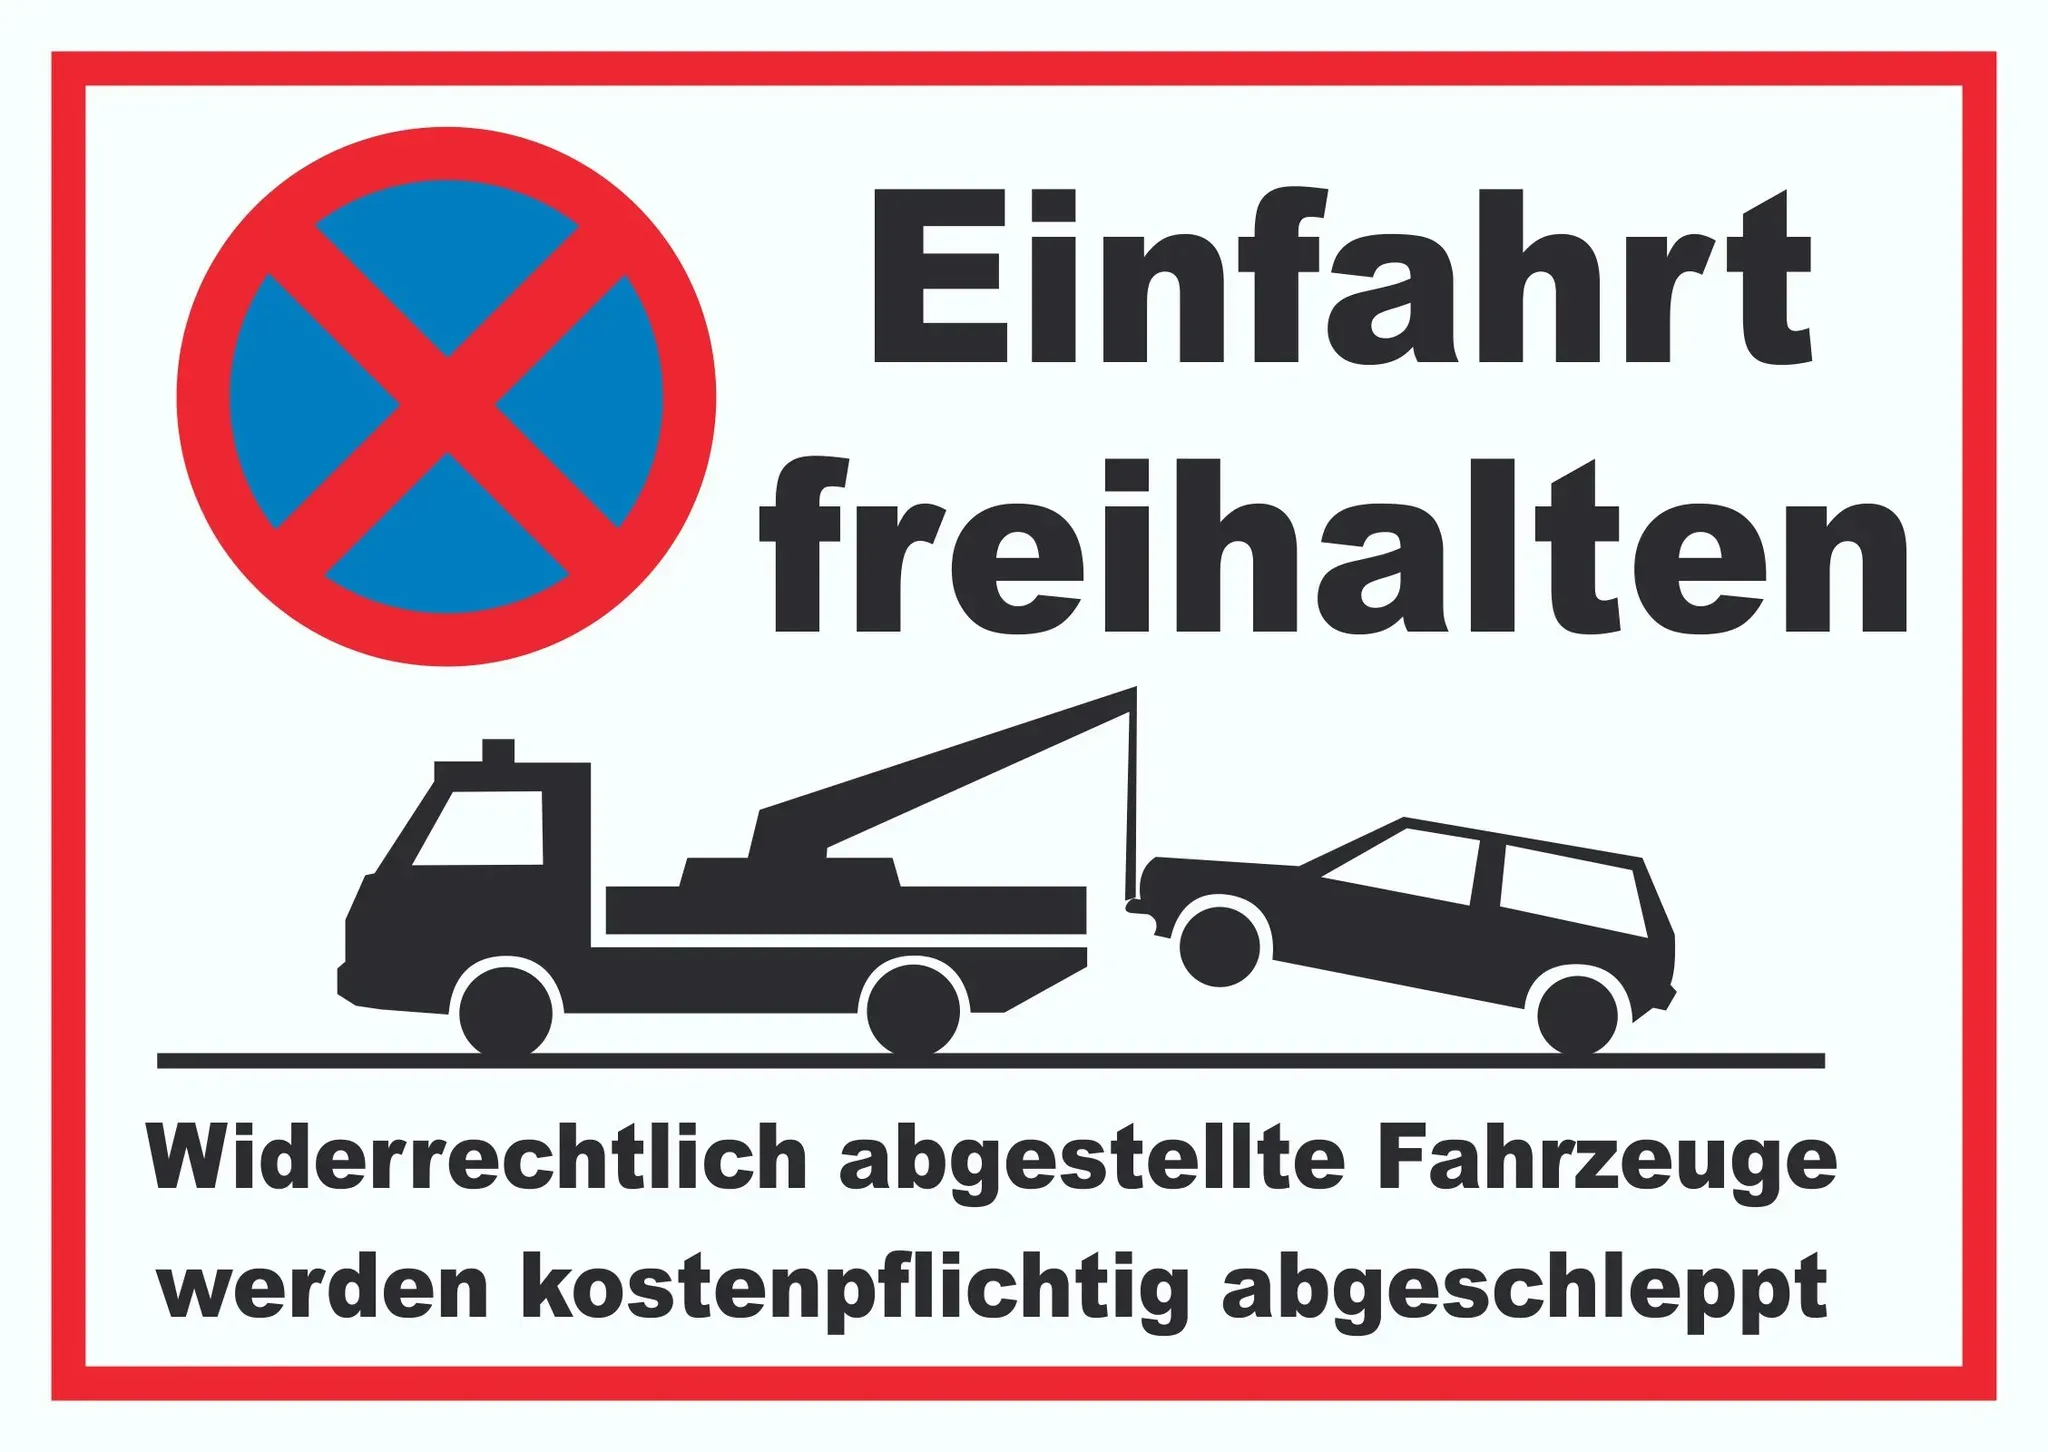 Einfahrt freihalten Widerrechtlich abgestellte Fahrzeuge werden kostenpflichtig abgeschleppt Schild A3 (297x420mm)